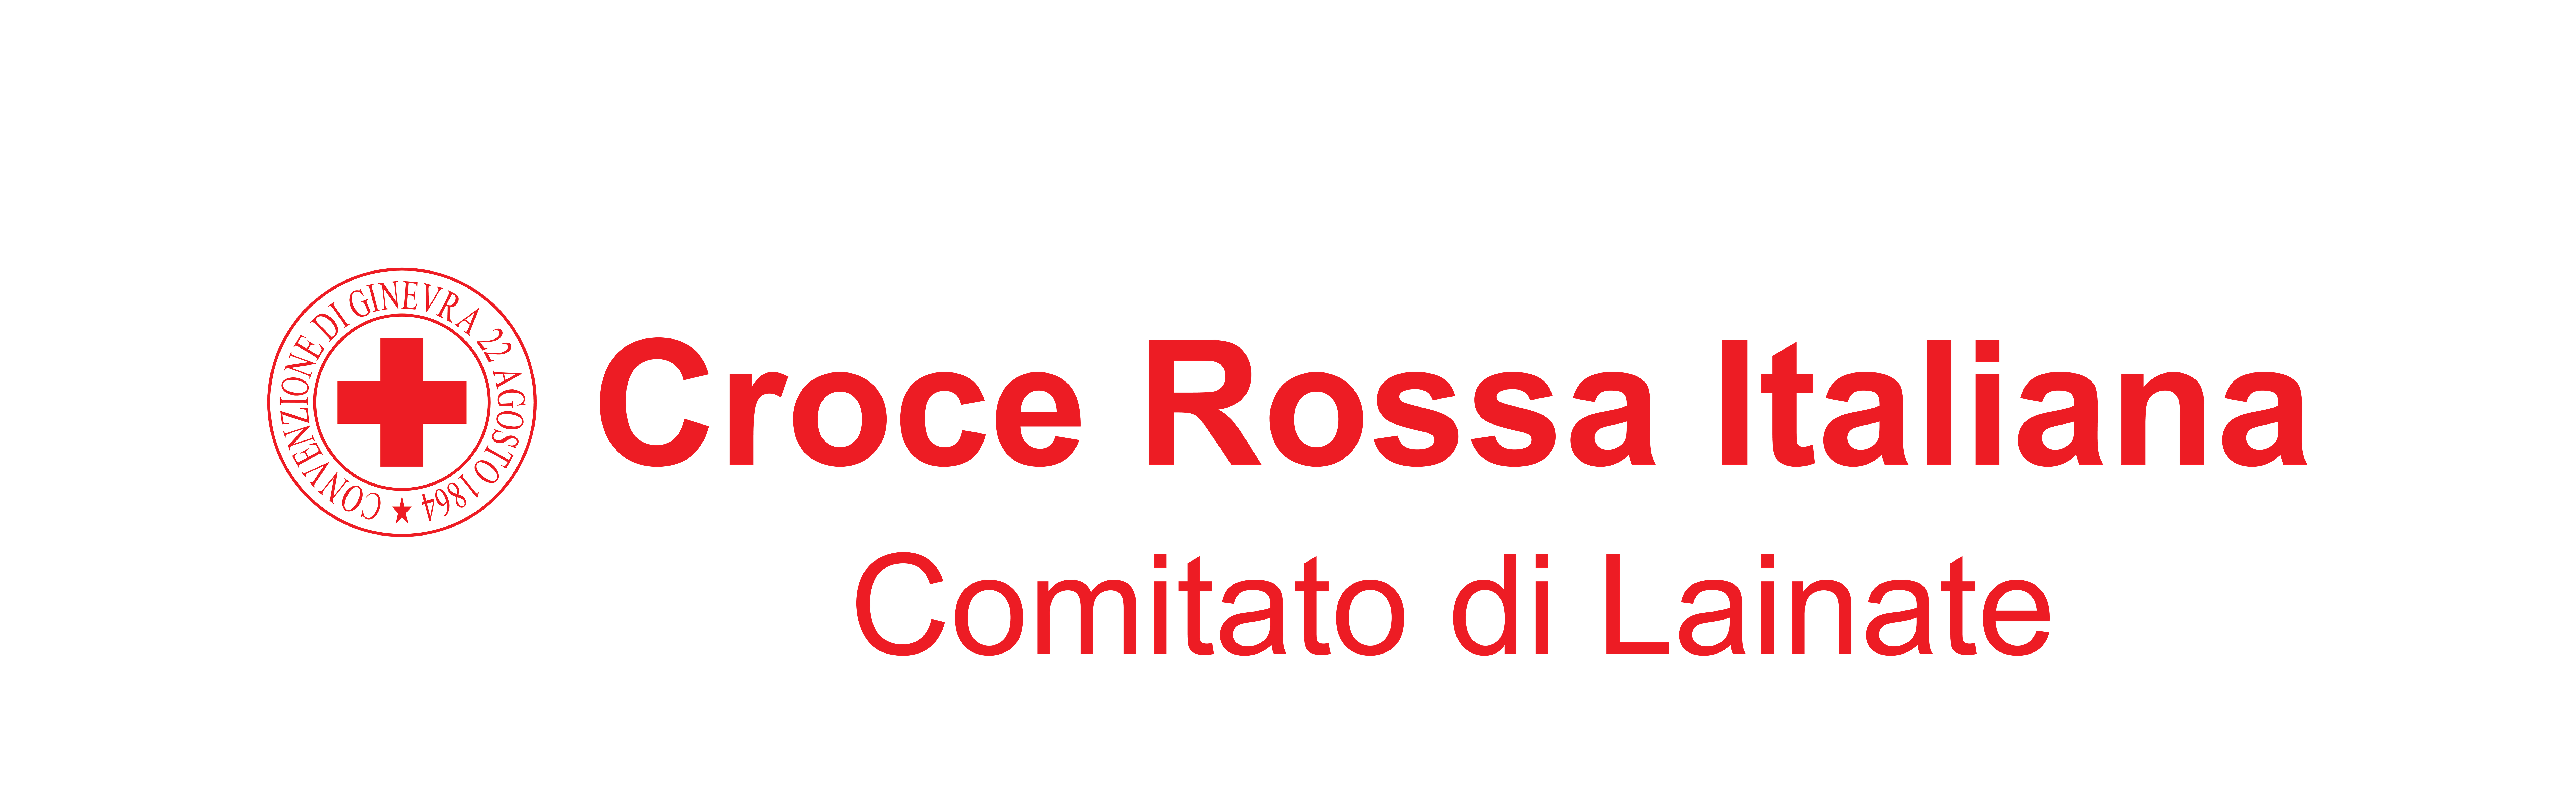 Croce Rossa Italiana - Comitato di Lainate